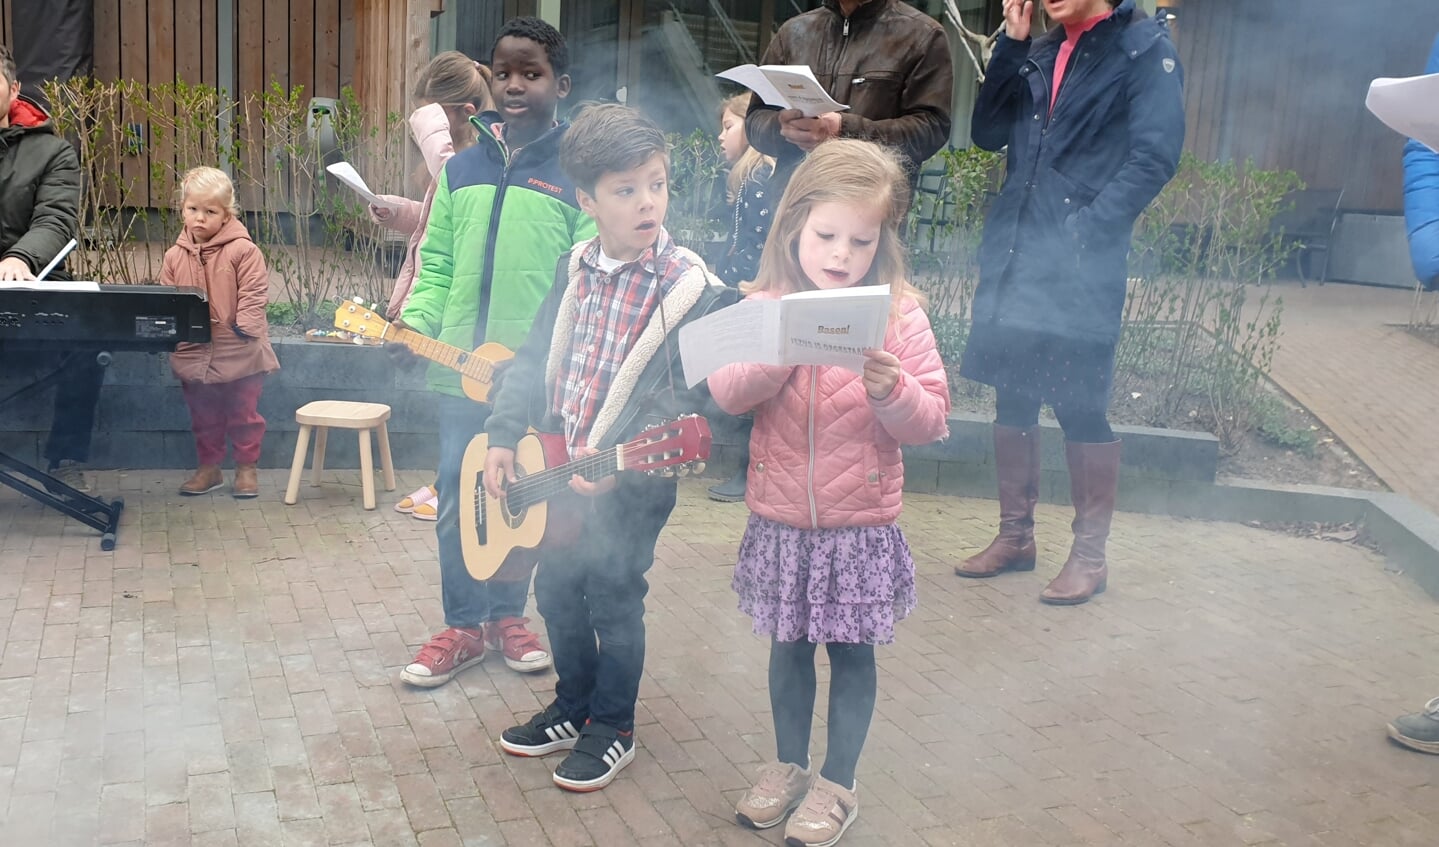 De zusters en de gezinnen zingen in de binnentuin paasliederen op Eerste Paasdag; toen nog alleen met leden van de leefgemeenschap.